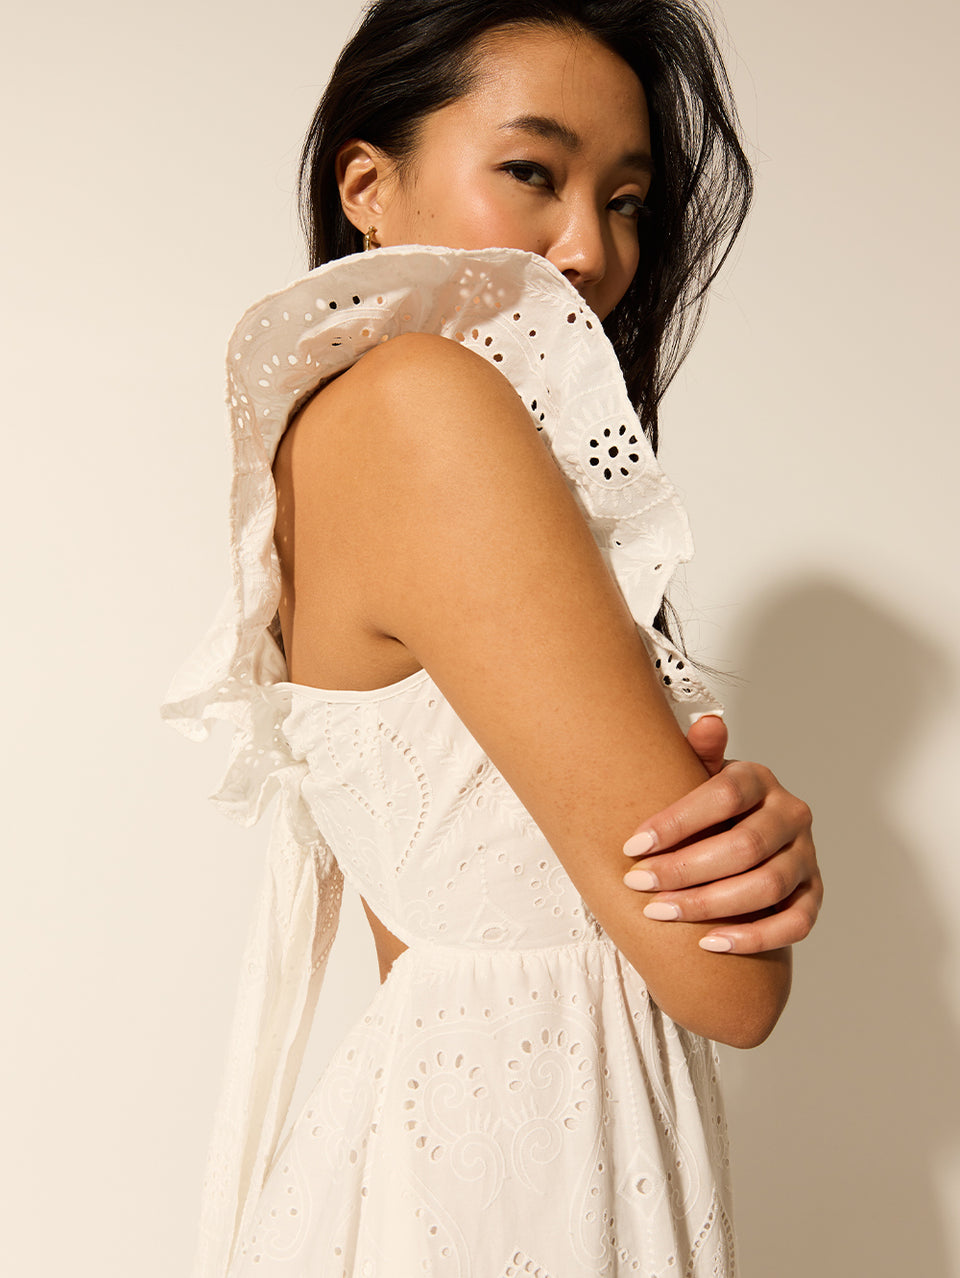 Clove Midi Dress KIVARI | Model wears white embroidered midi dress detail